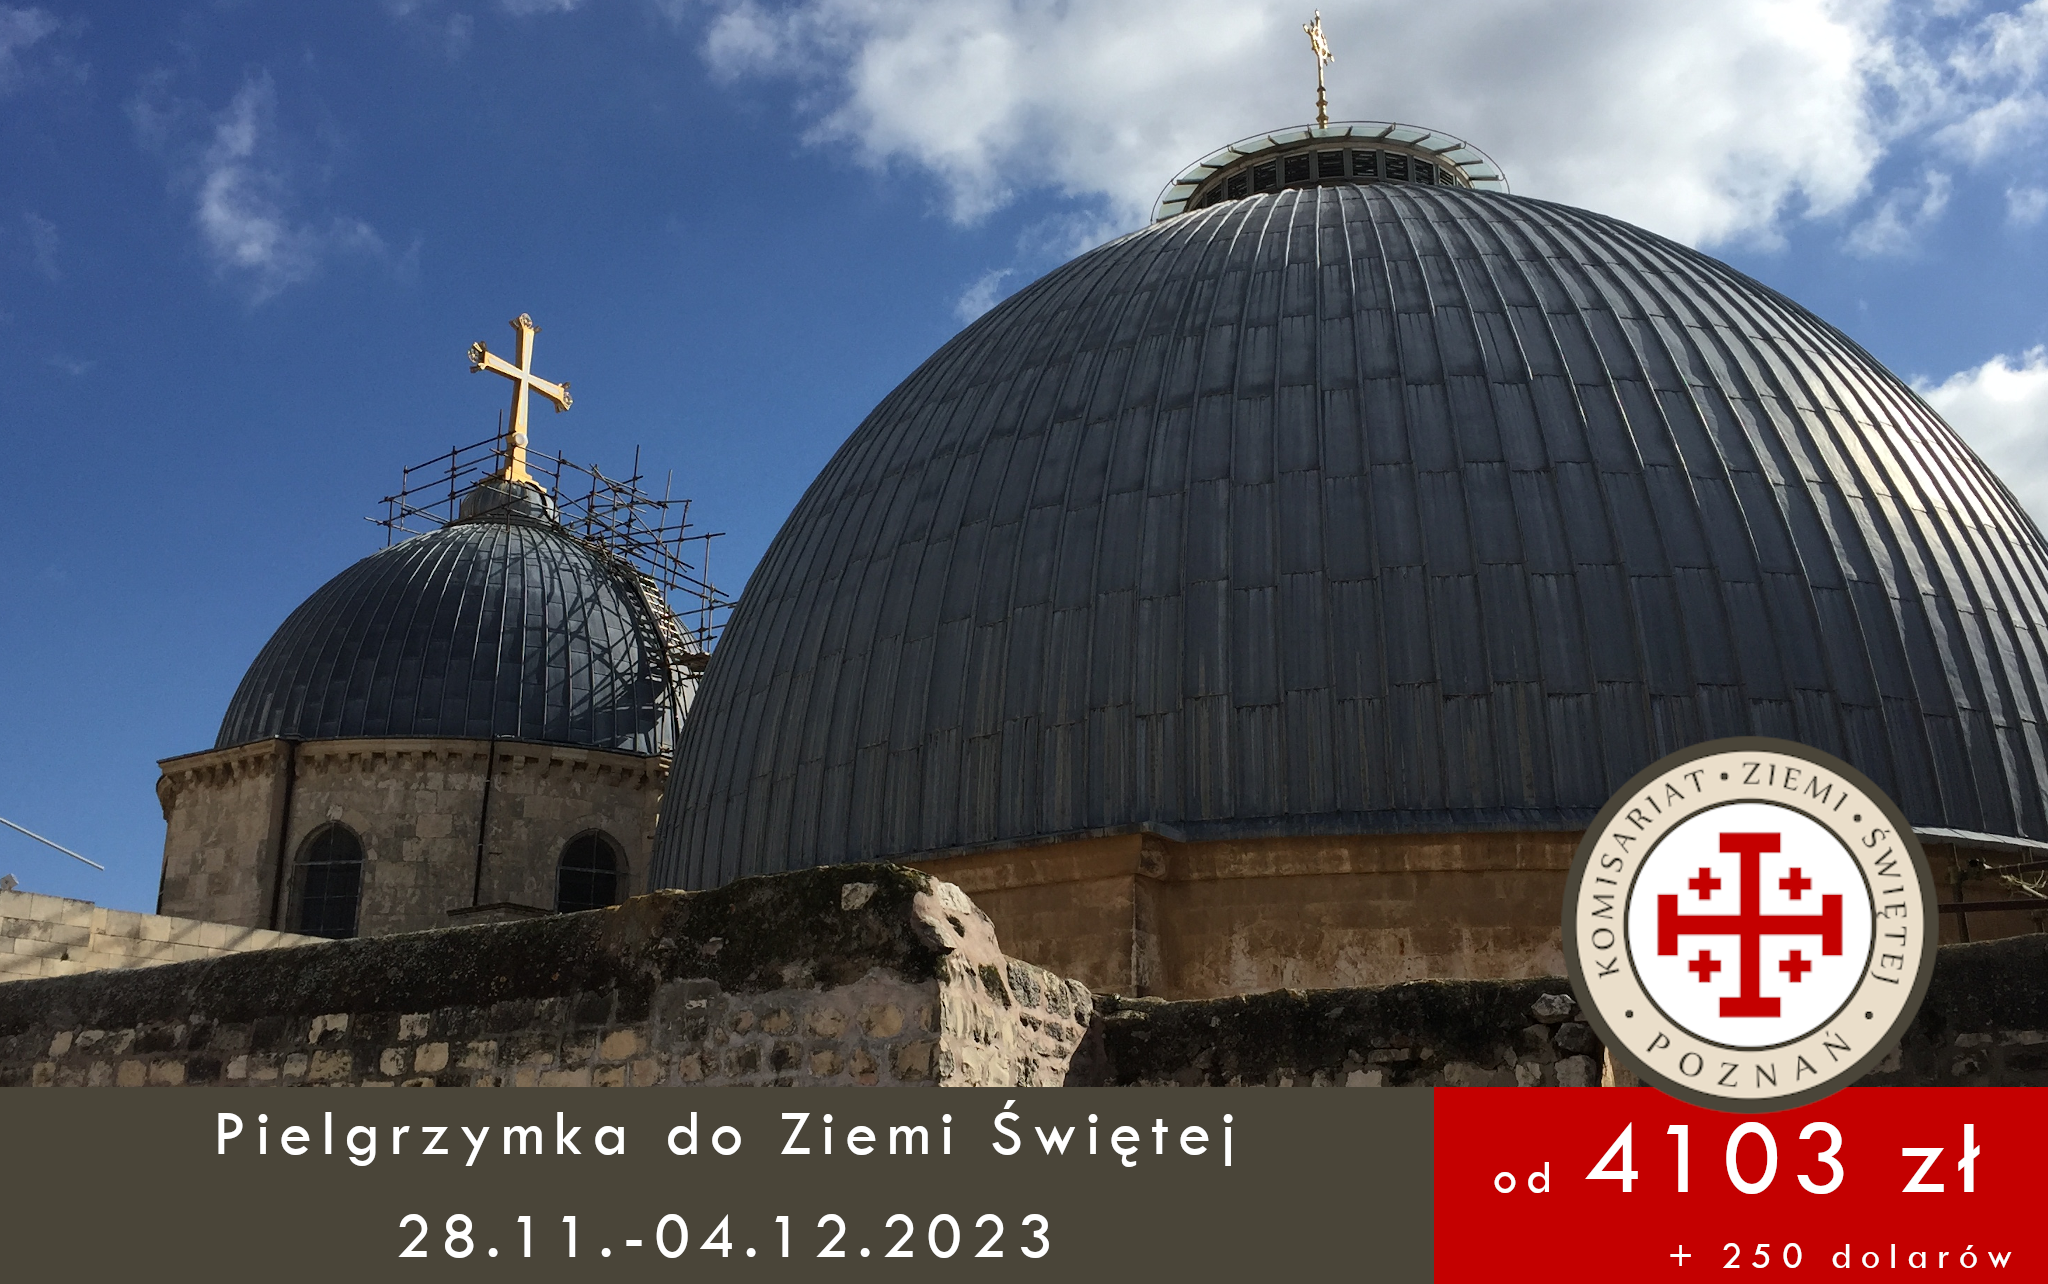 You are currently viewing Pielgrzymka do Ziemi Świętej 28.11.-04.12.2023